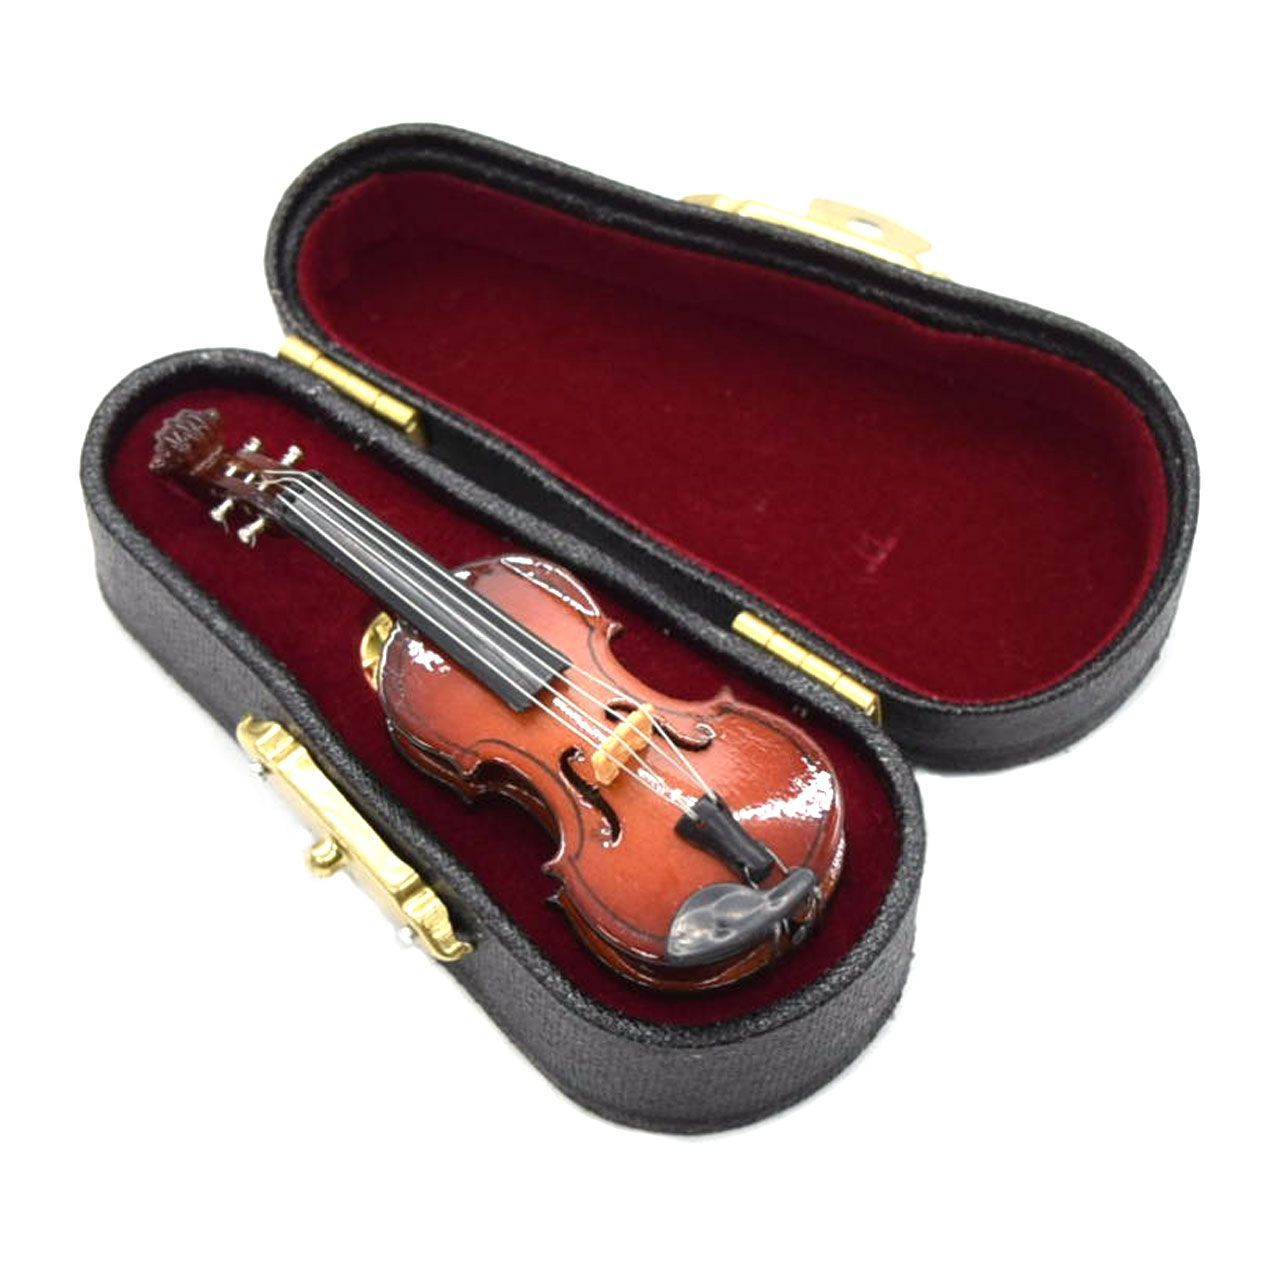 クッキー型 音楽 楽器 バイオリン 音符 楽譜 型抜き ヴィオラ チェロ 弦楽器